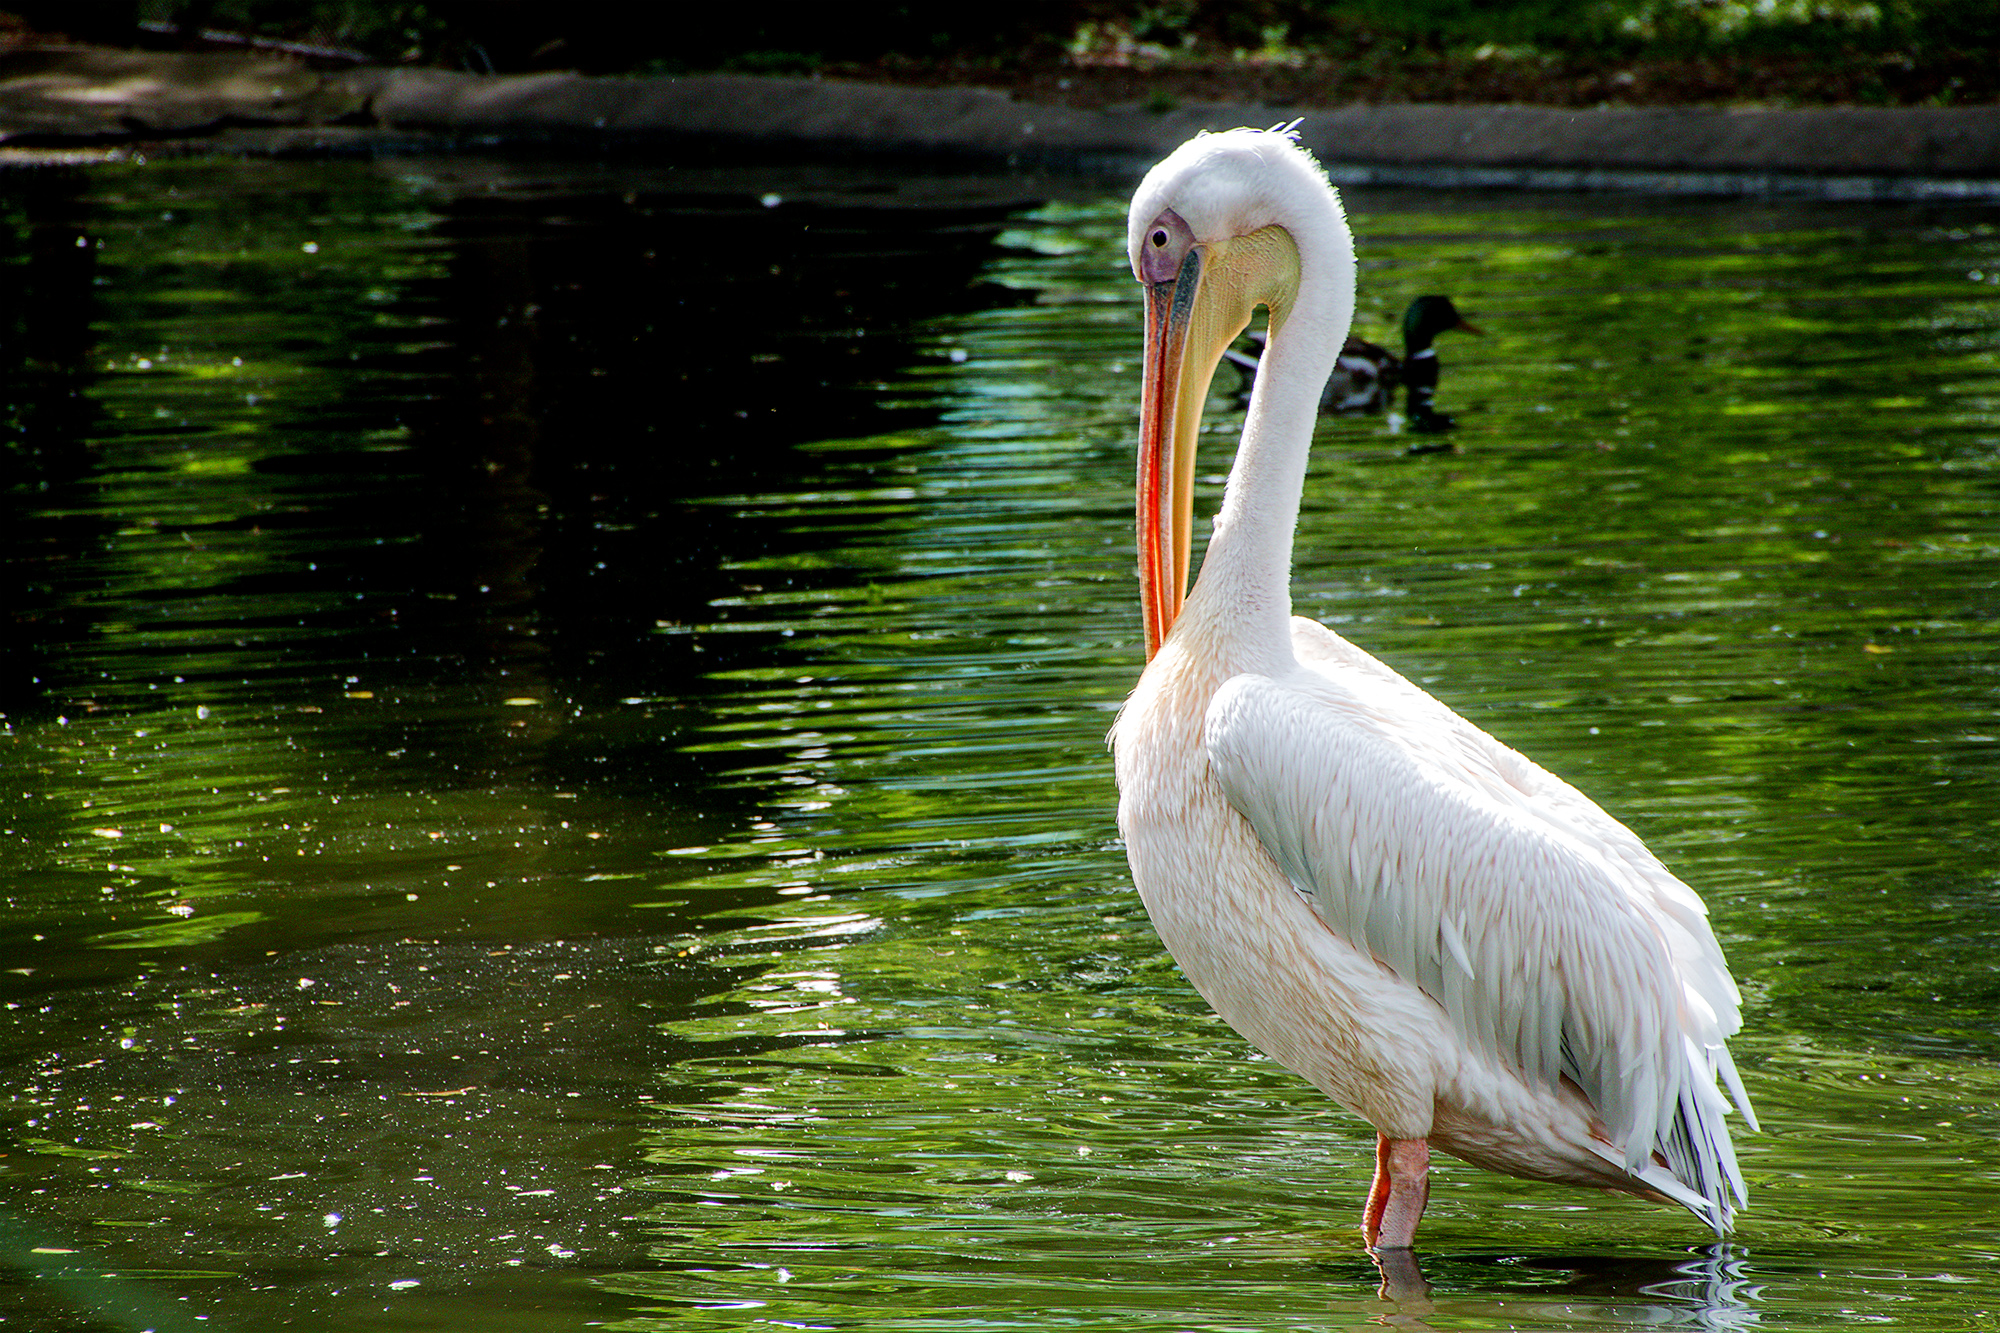 4752-London-Zoo-Pelican-keeping-an-eye-open